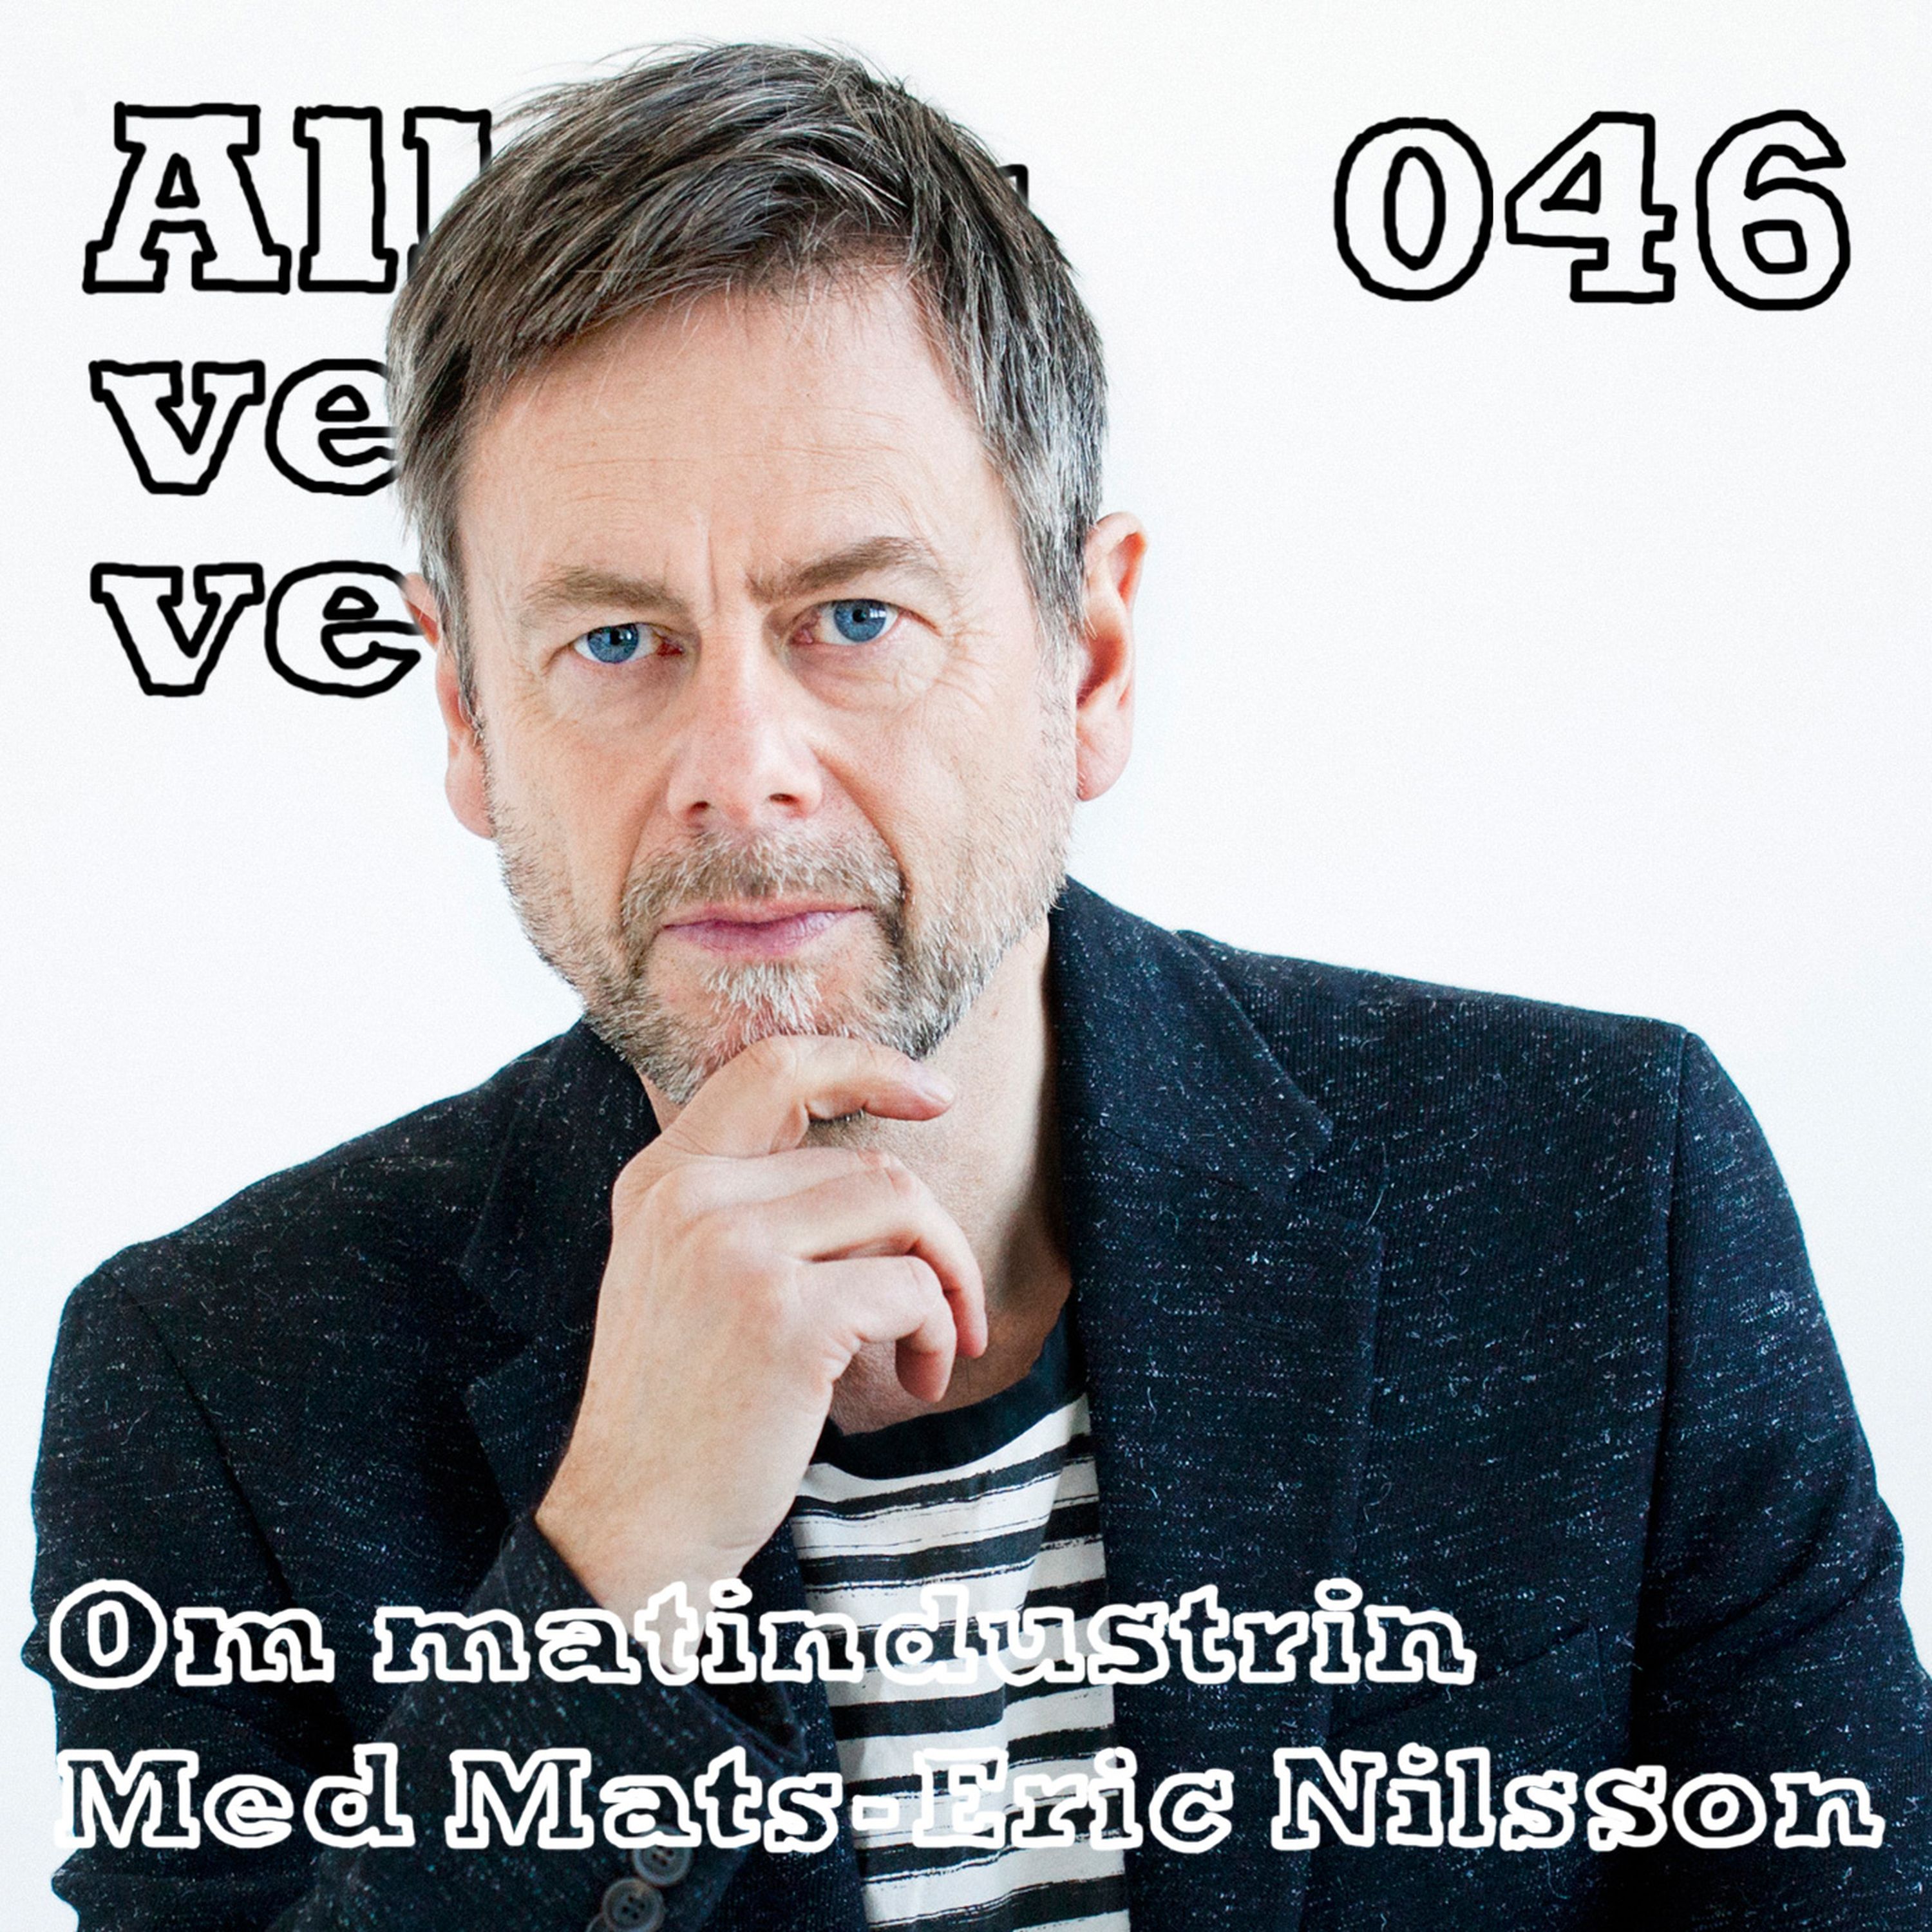 046 Om matindustrin med Mats-Eric Nilsson